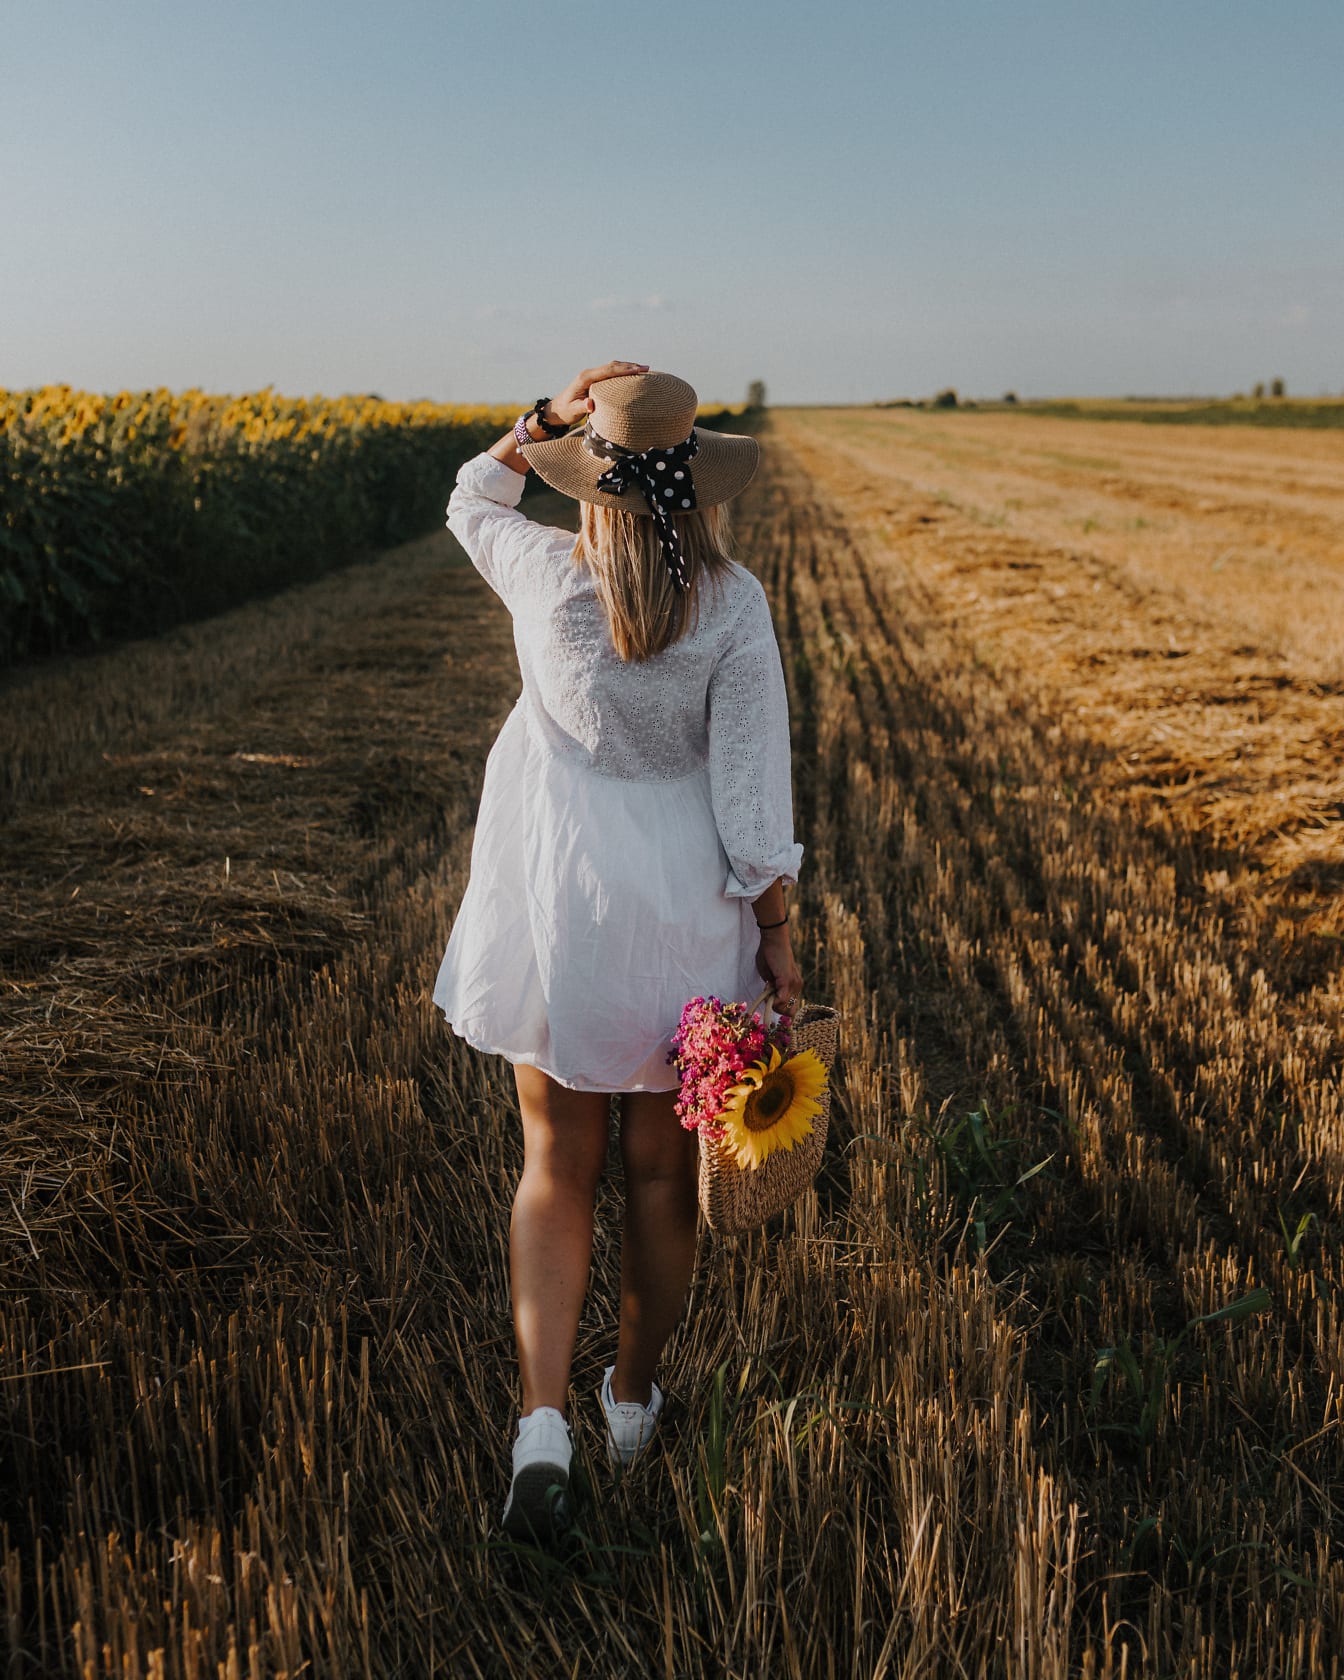 Młoda kobieta idąca po polu pszenicy w białej sukni i słomkowym kapeluszu